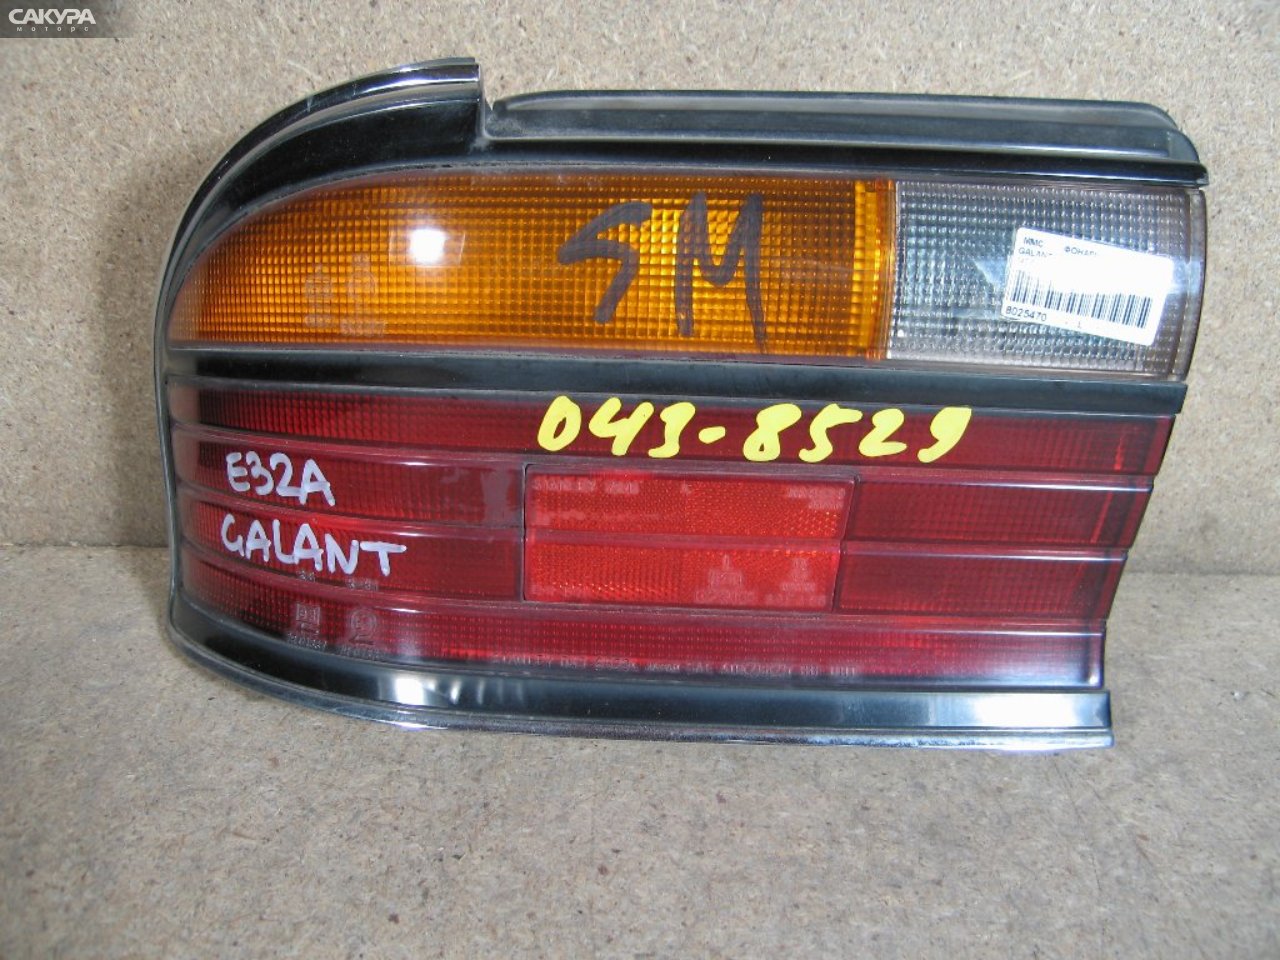 Фонарь стоп-сигнала левый Mitsubishi Galant E32A 043-8529: купить в Сакура Абакан.